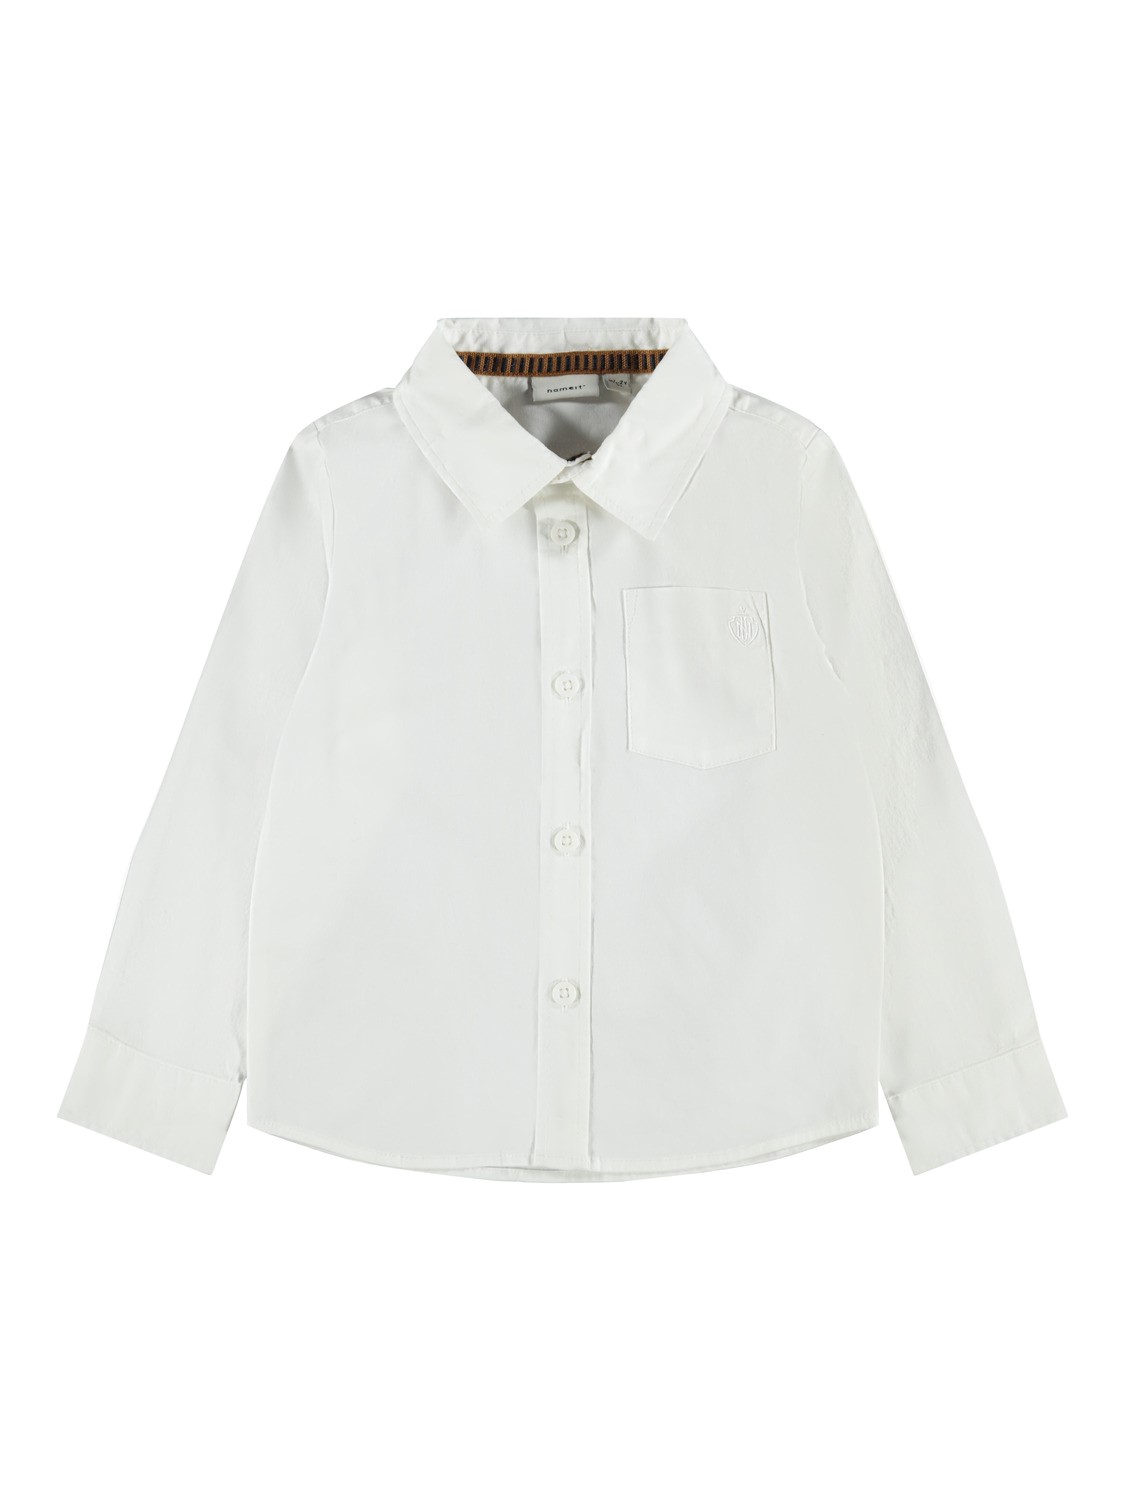 Rifik ls Shirt - Bright White